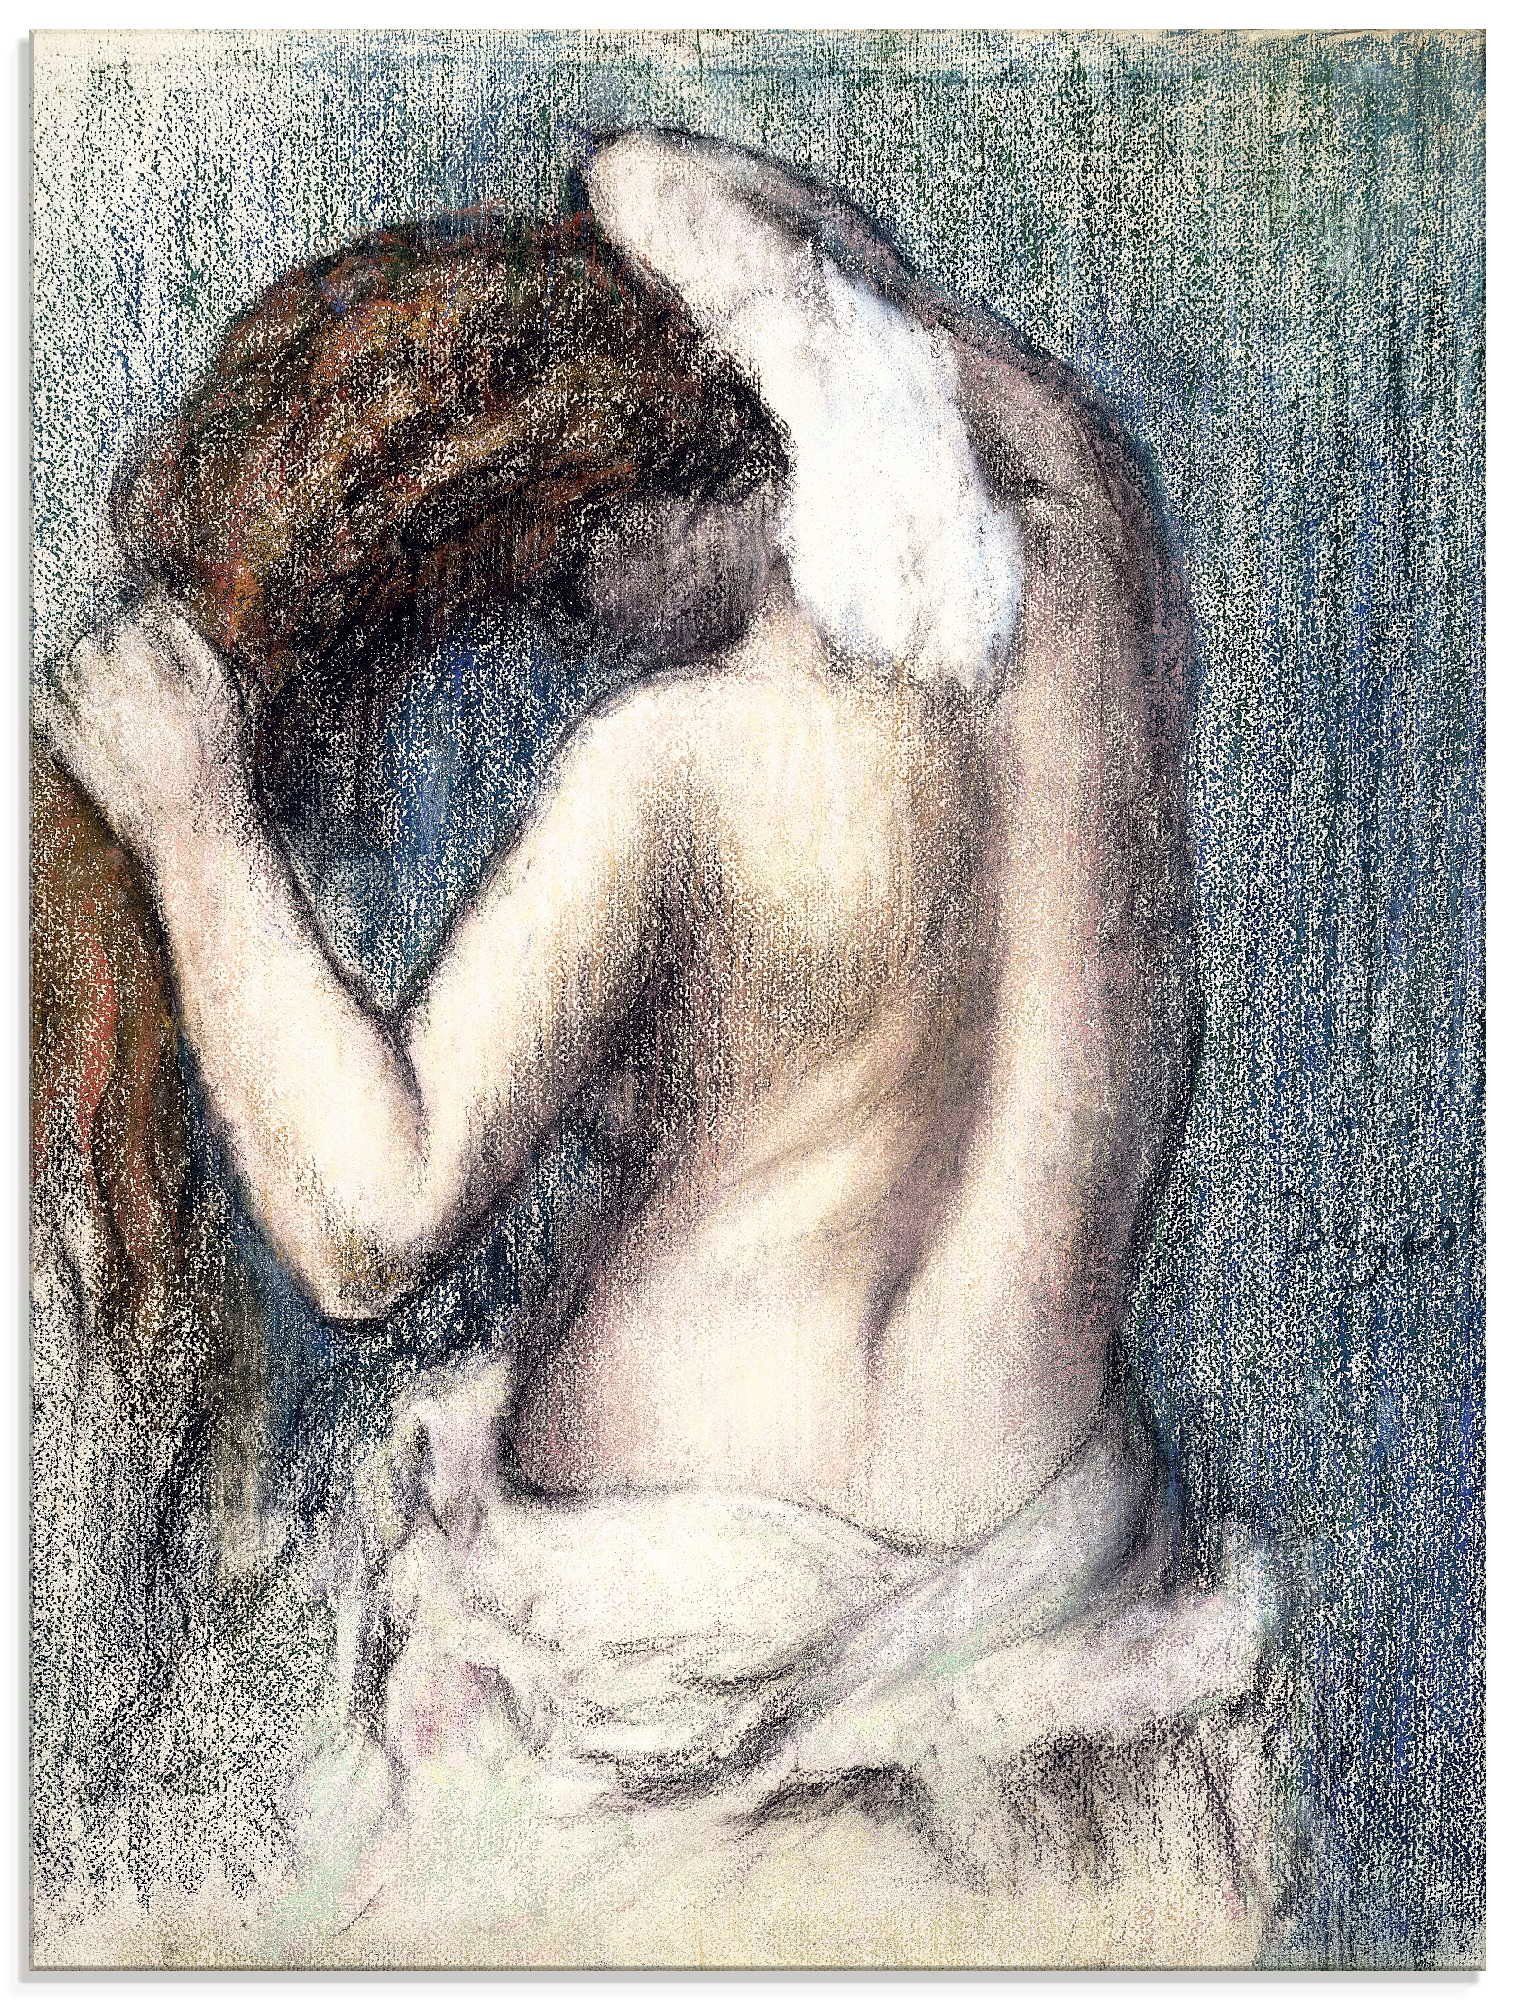 Artland Print op glas Vrouw bij het afdrogen (Femme s'essuyant) (1 stuk)